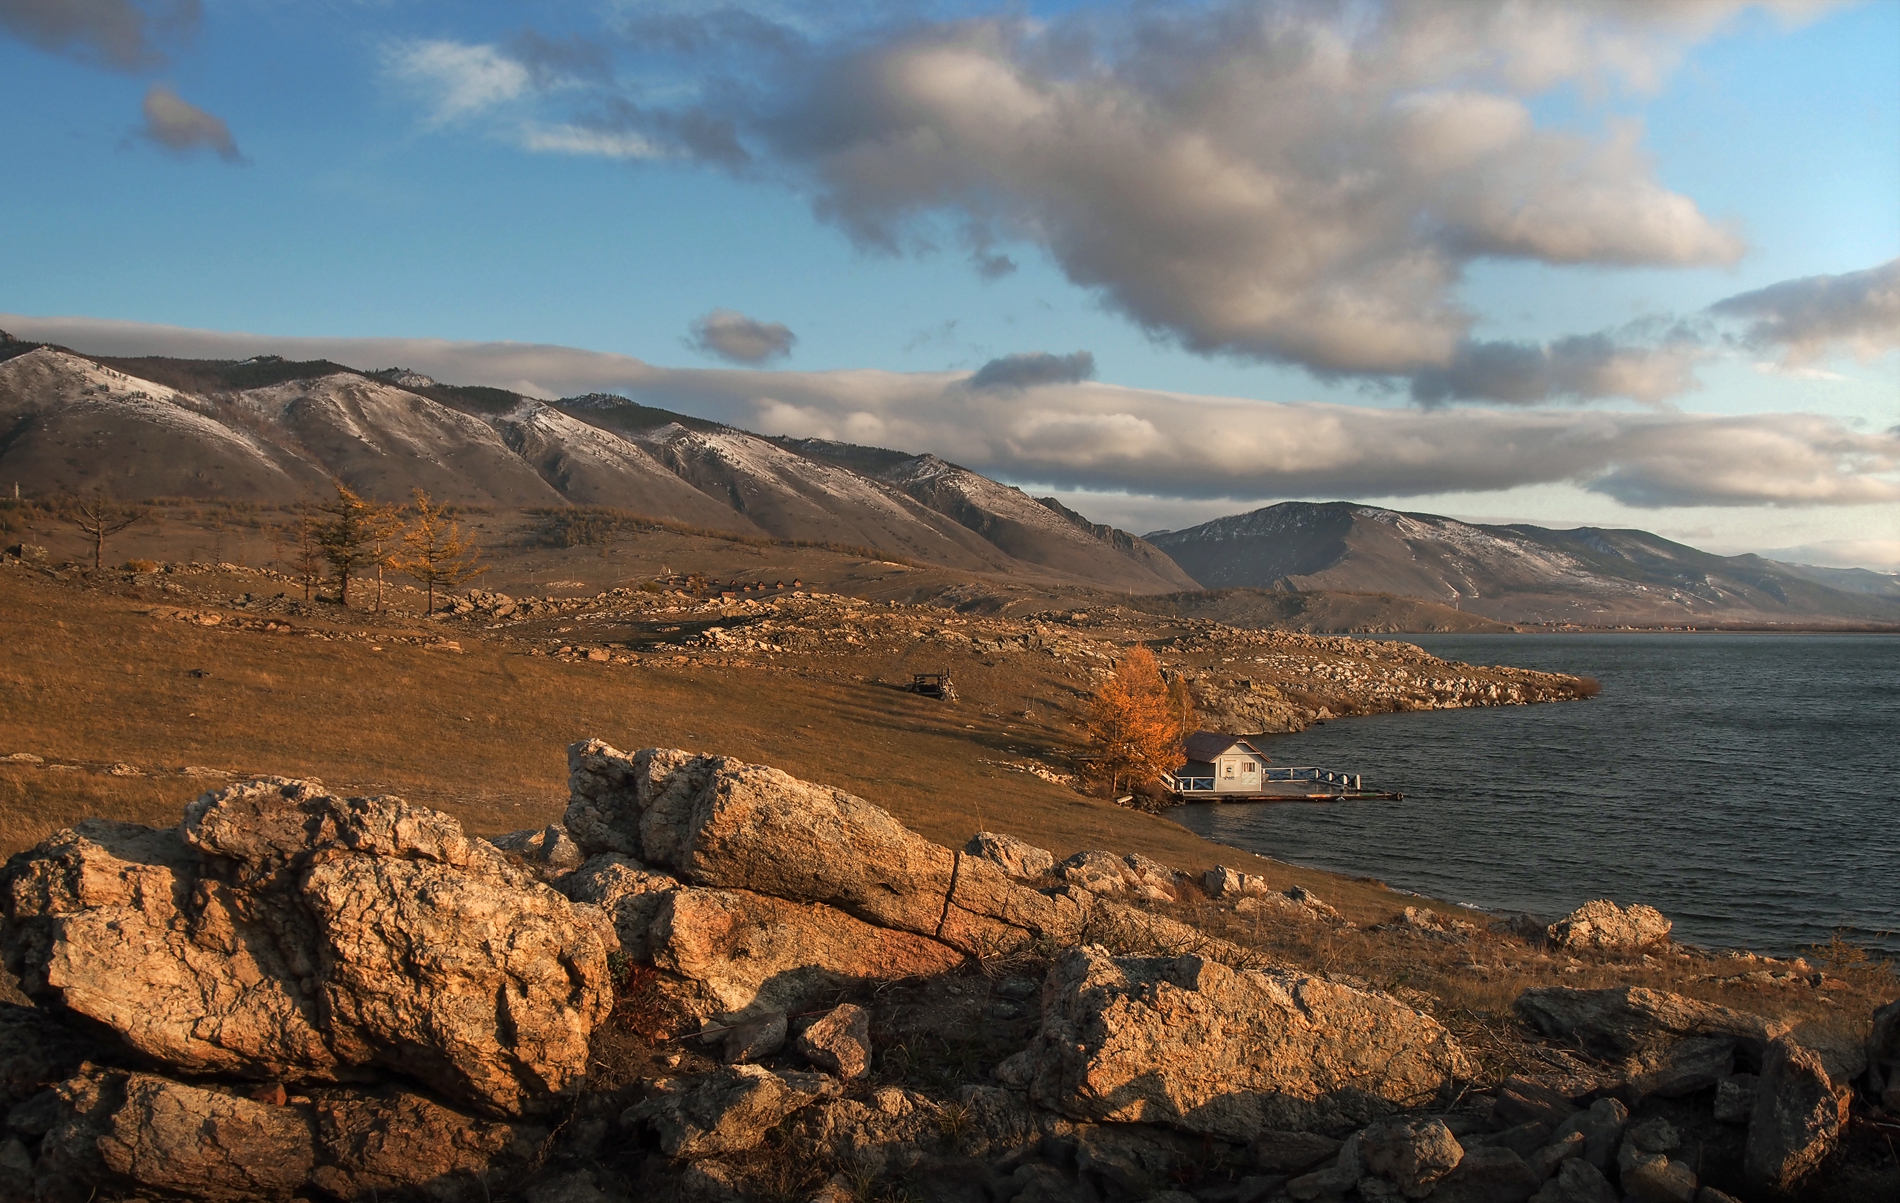 Байкал фото в хорошем качестве панорамное